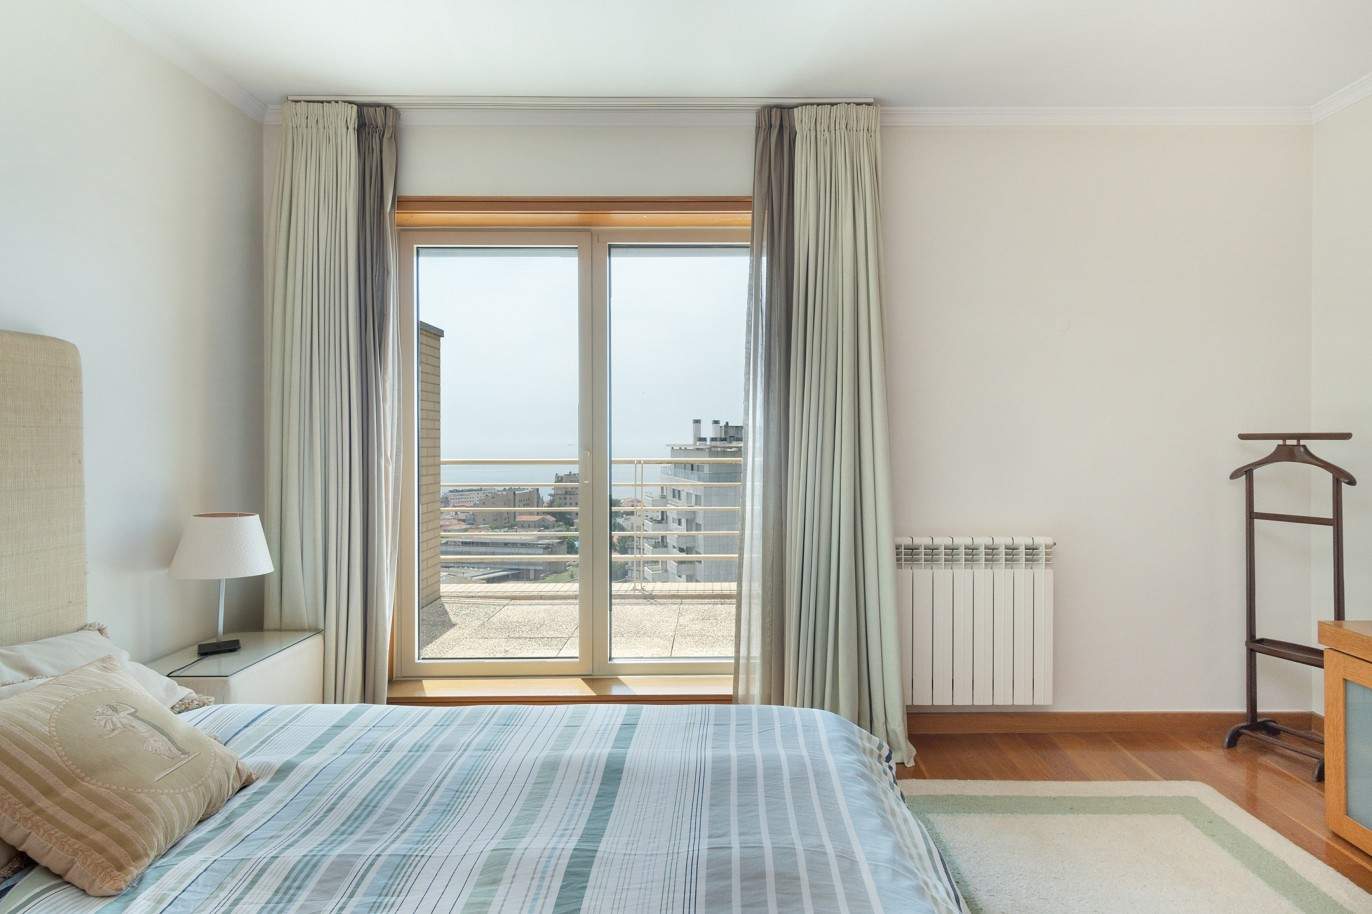 5 bedroom duplex flat with sea views, for sale, Pinhais da Foz, Porto, Portugal_203343